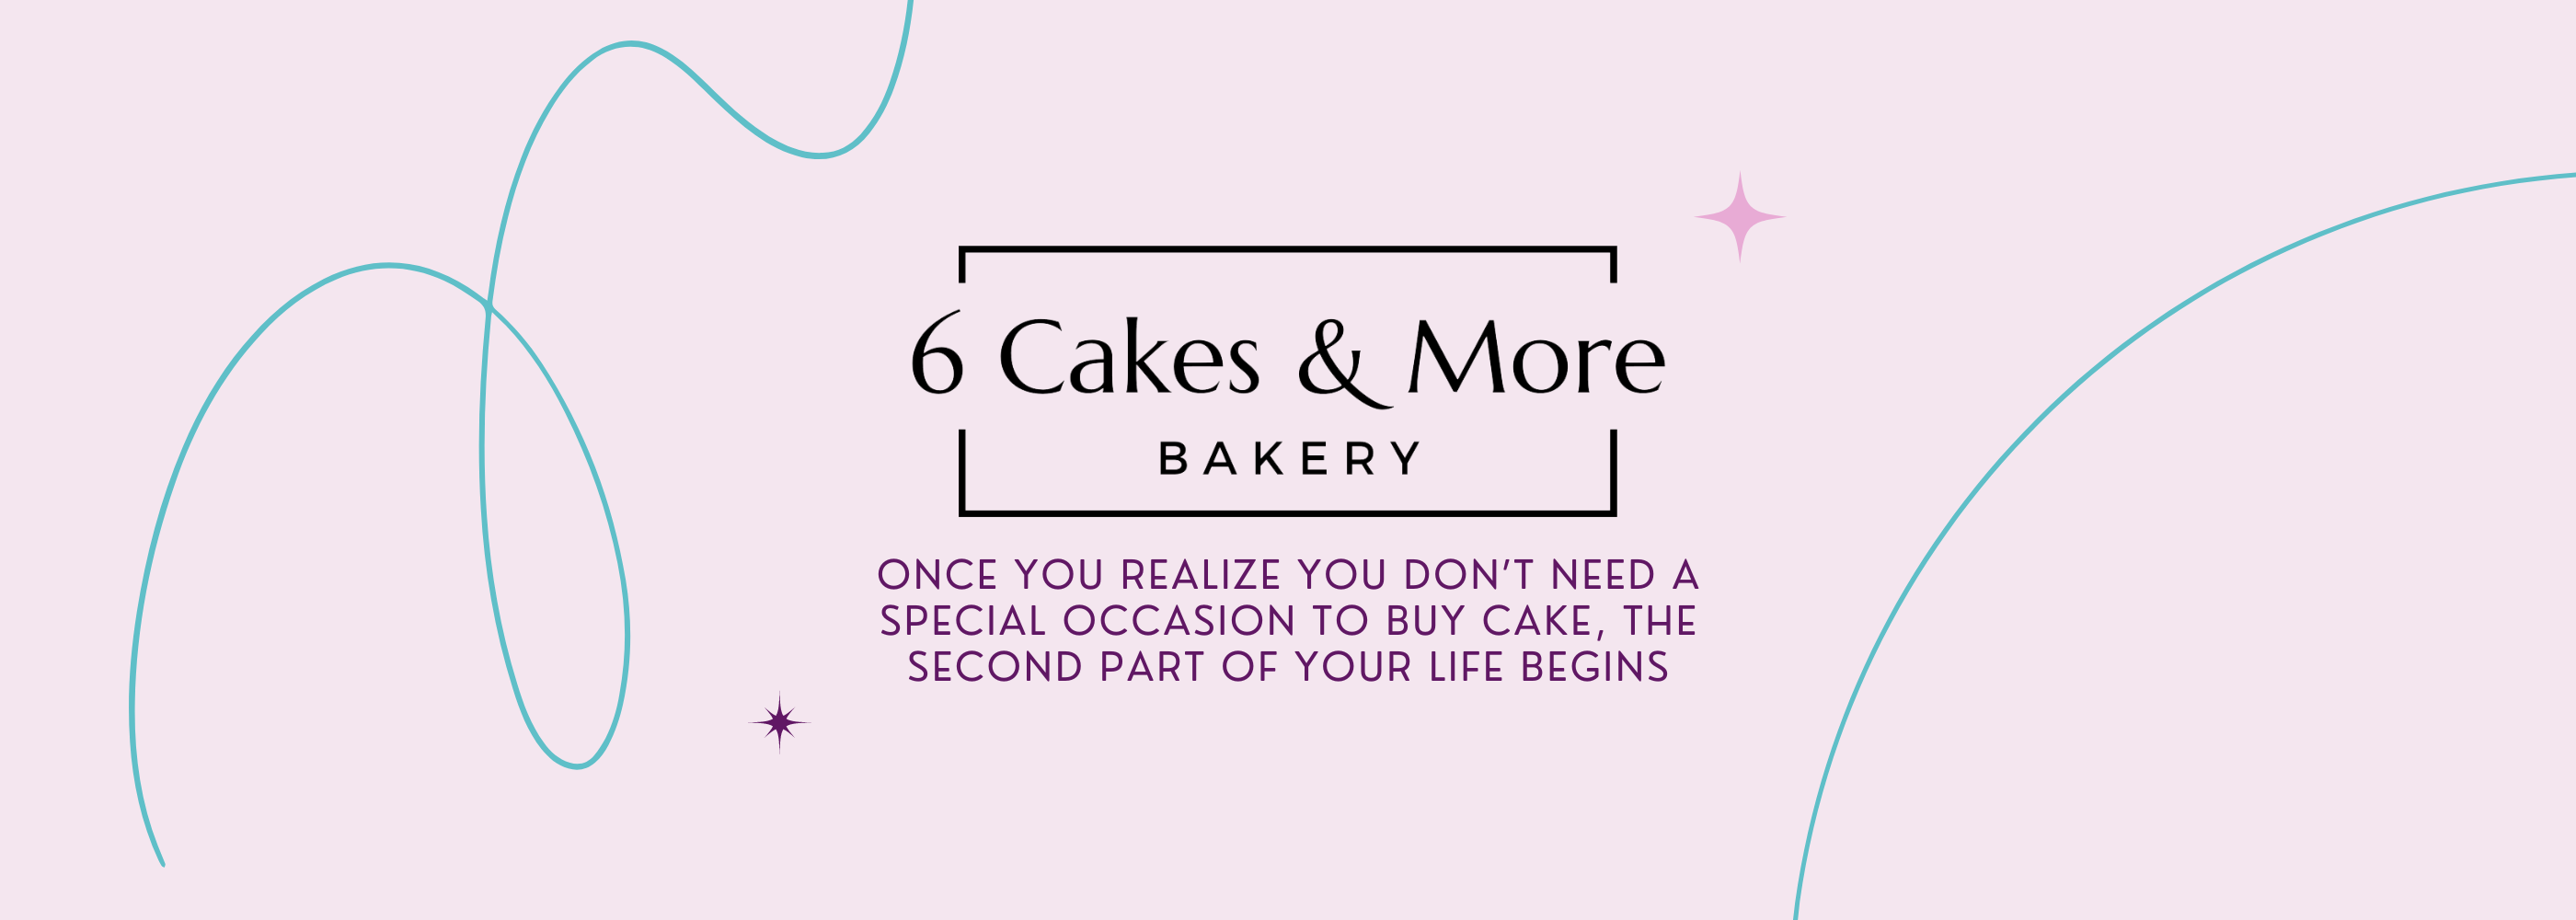 Cakes - Reviews, Photos - Cake & More - Tripadvisor